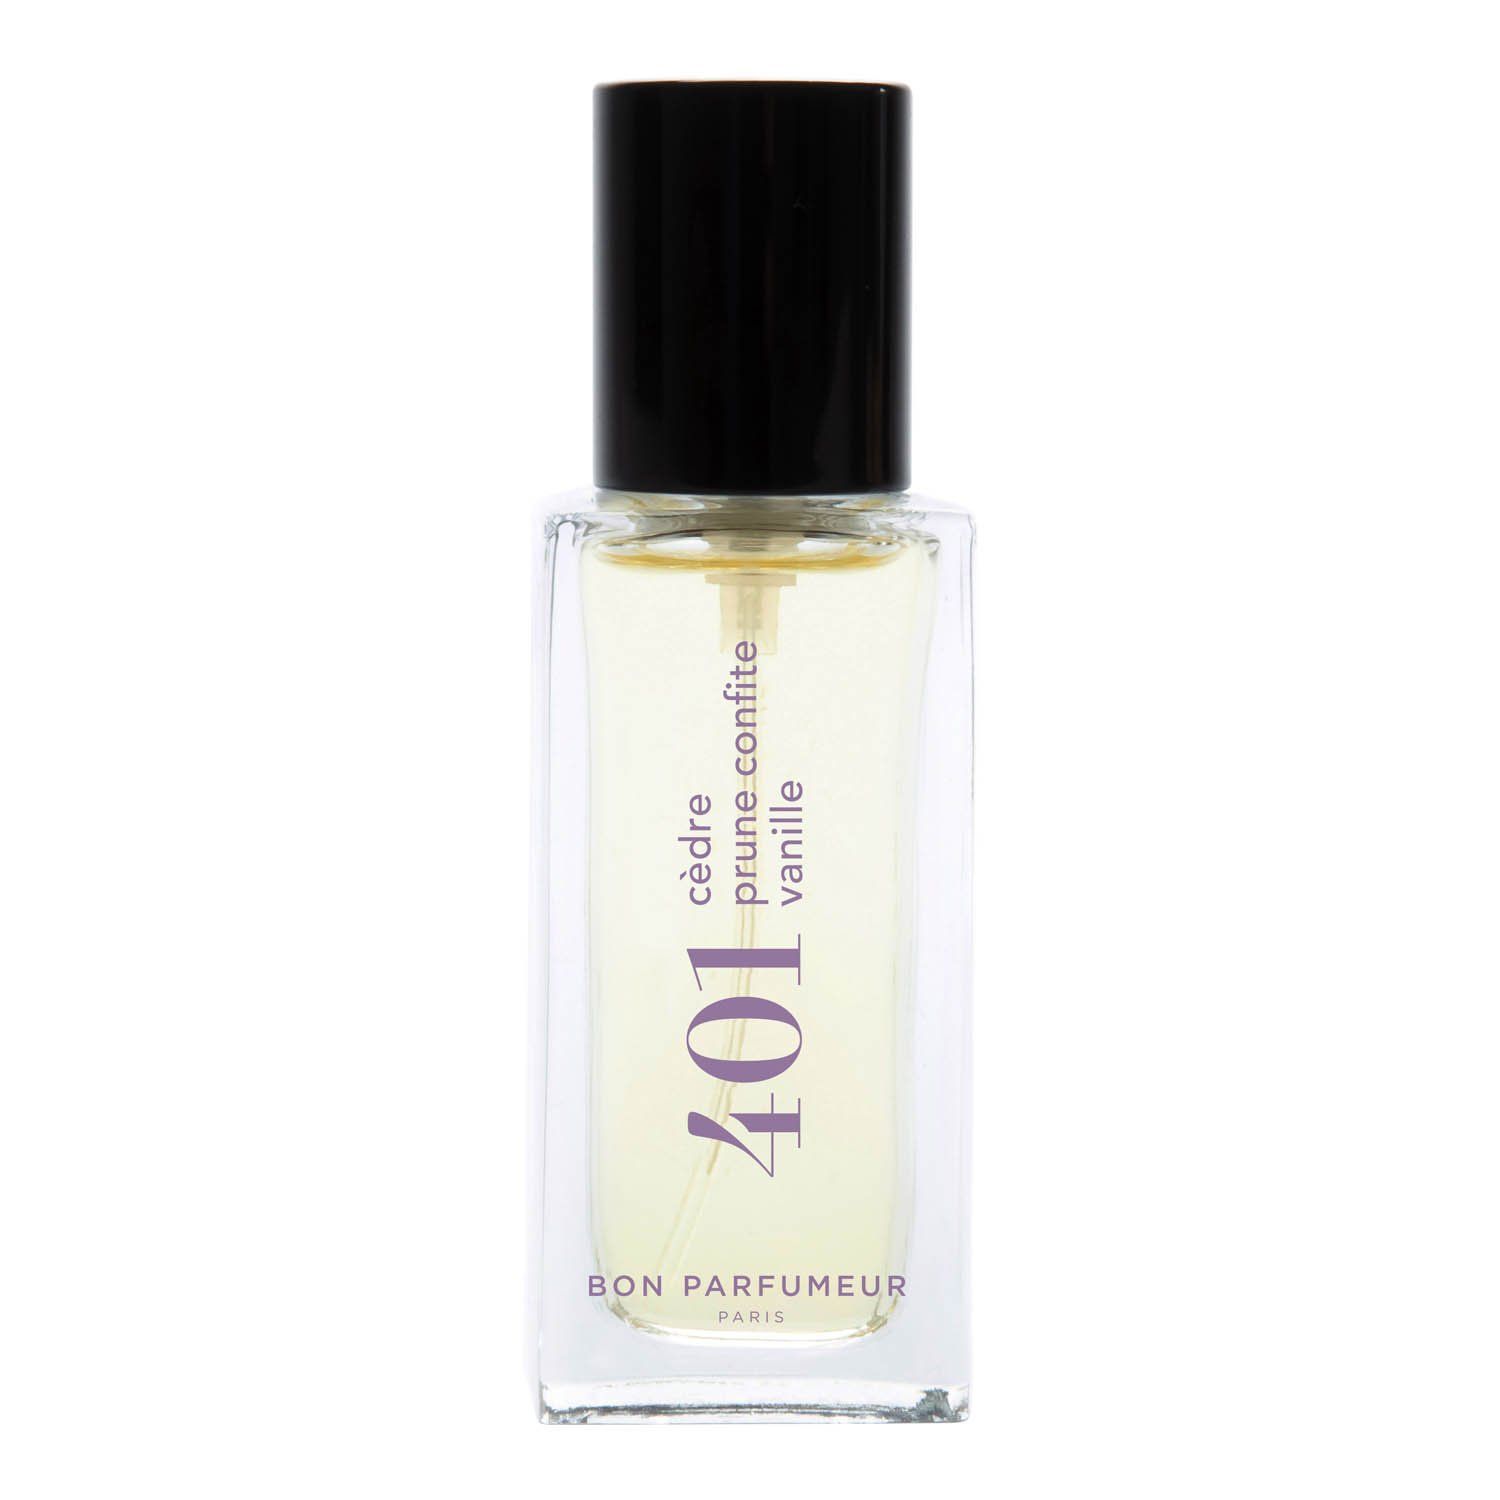 Bon Parfumeur Eau de Parfum 401 15 ml